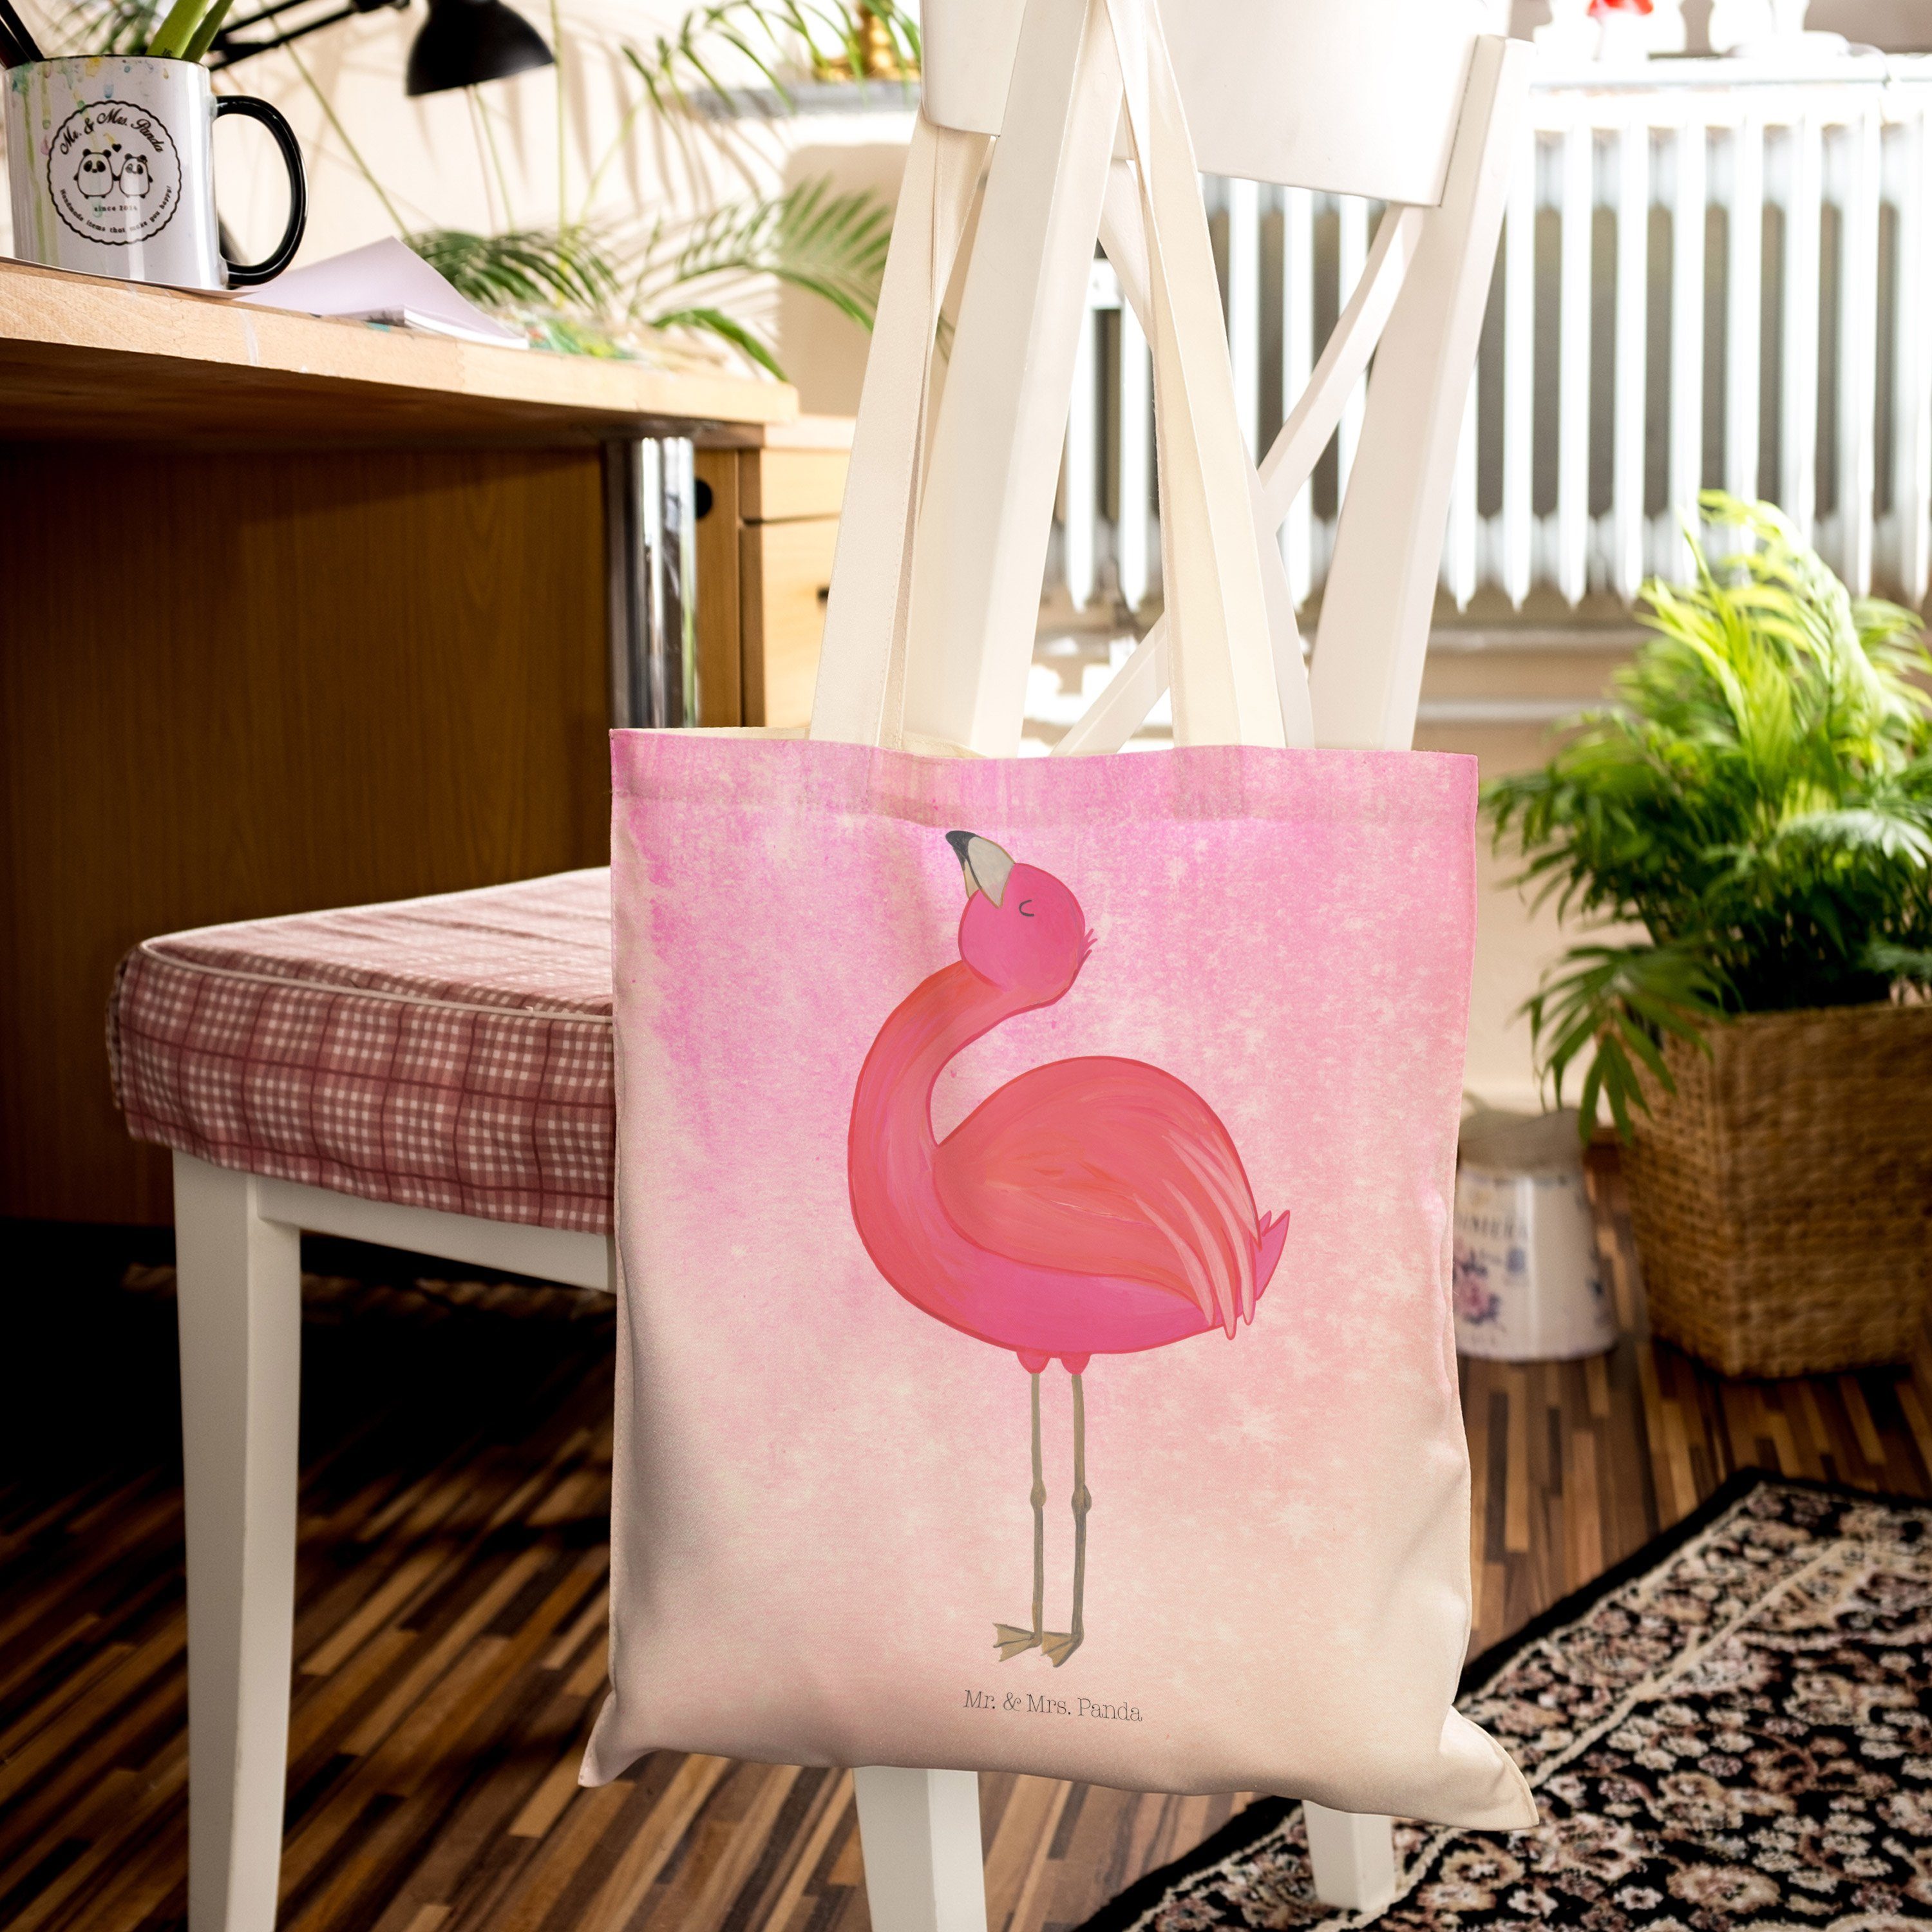 Mr. & Mrs. Panda - Tragetasche Pink Tragetasche, Aquarell Geschenk, zu Flamingo stolz (1-tlg) - glücklich